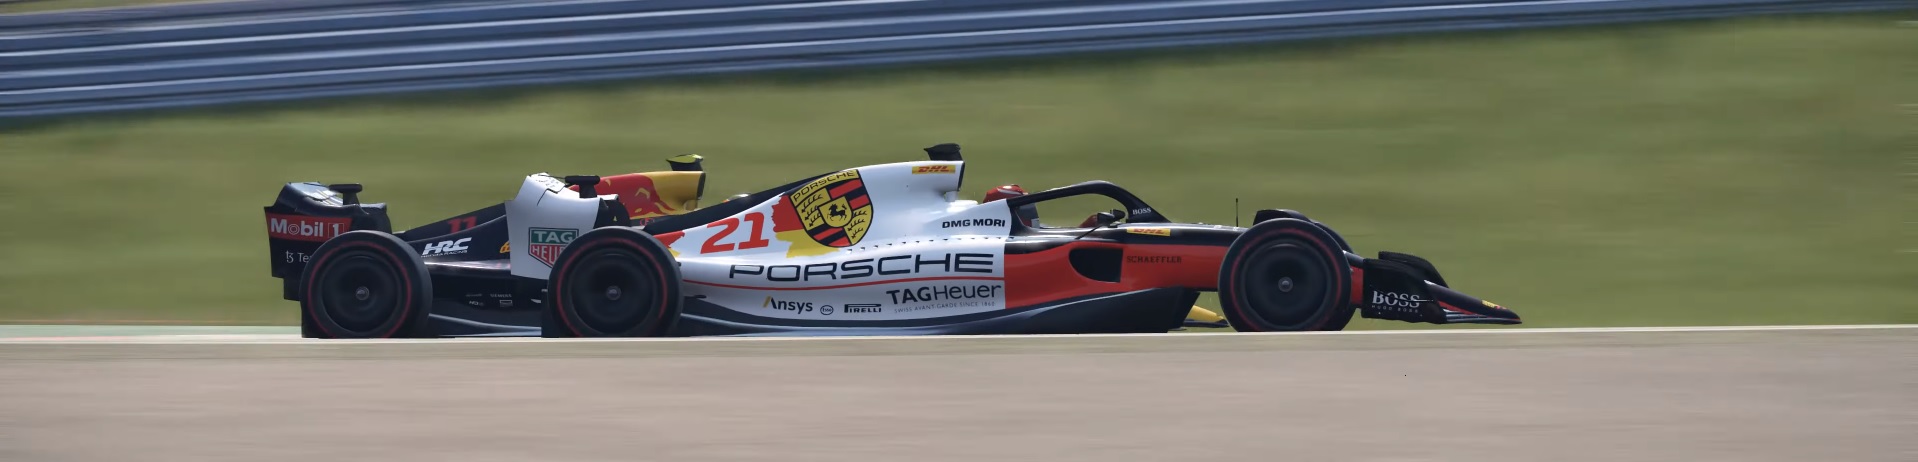 Porsche F1.jpg